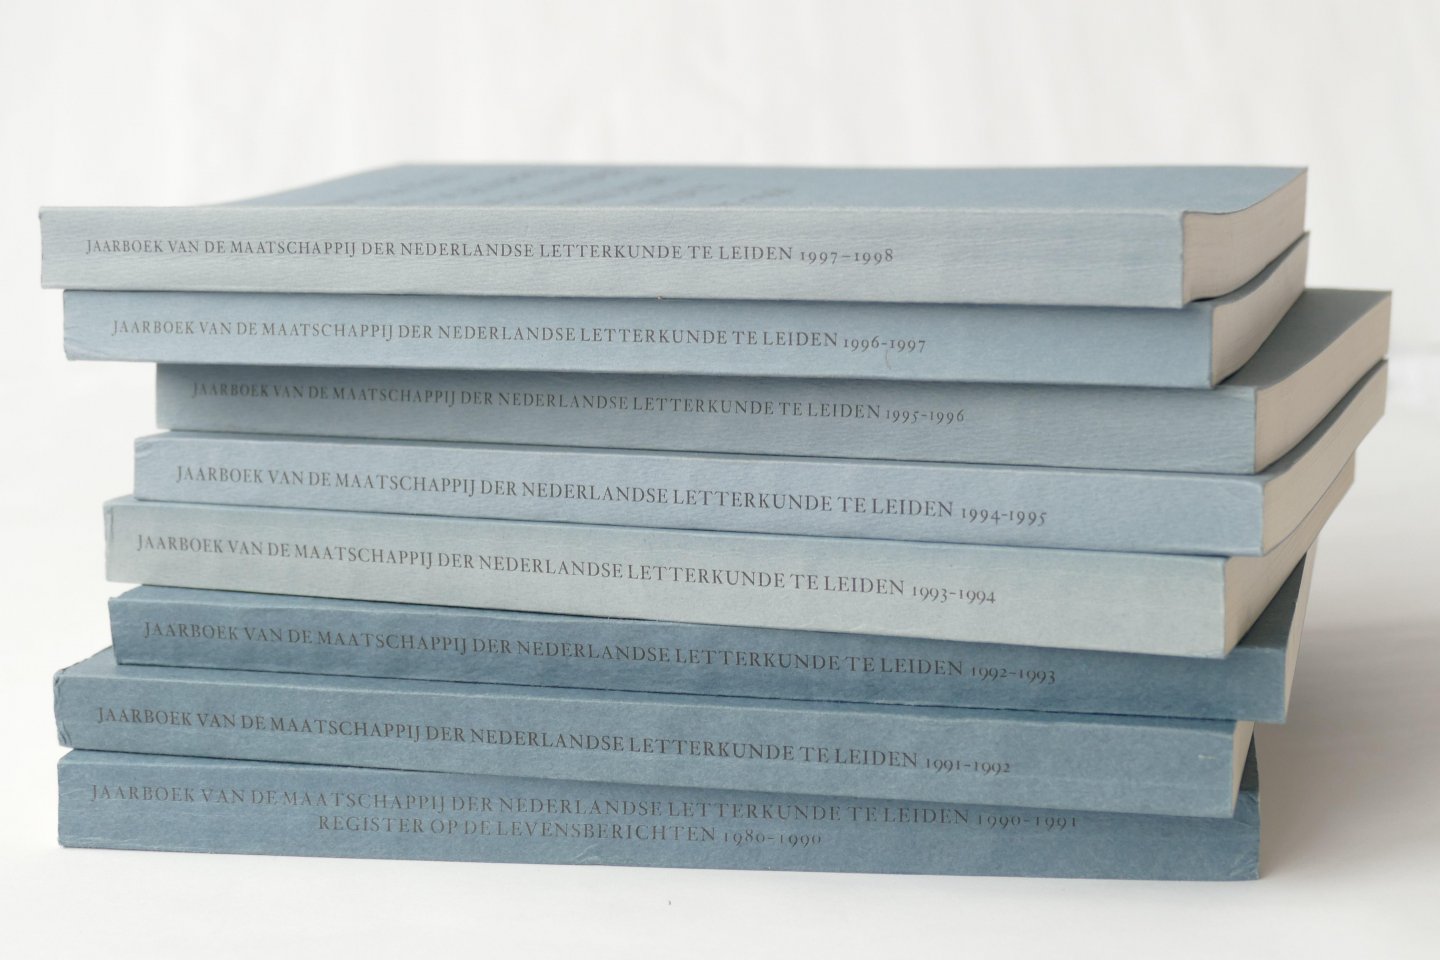 Diversen - Jaarboek van de Maatschappij der Nederlandse Letterkunde te Leiden (1939-2006)